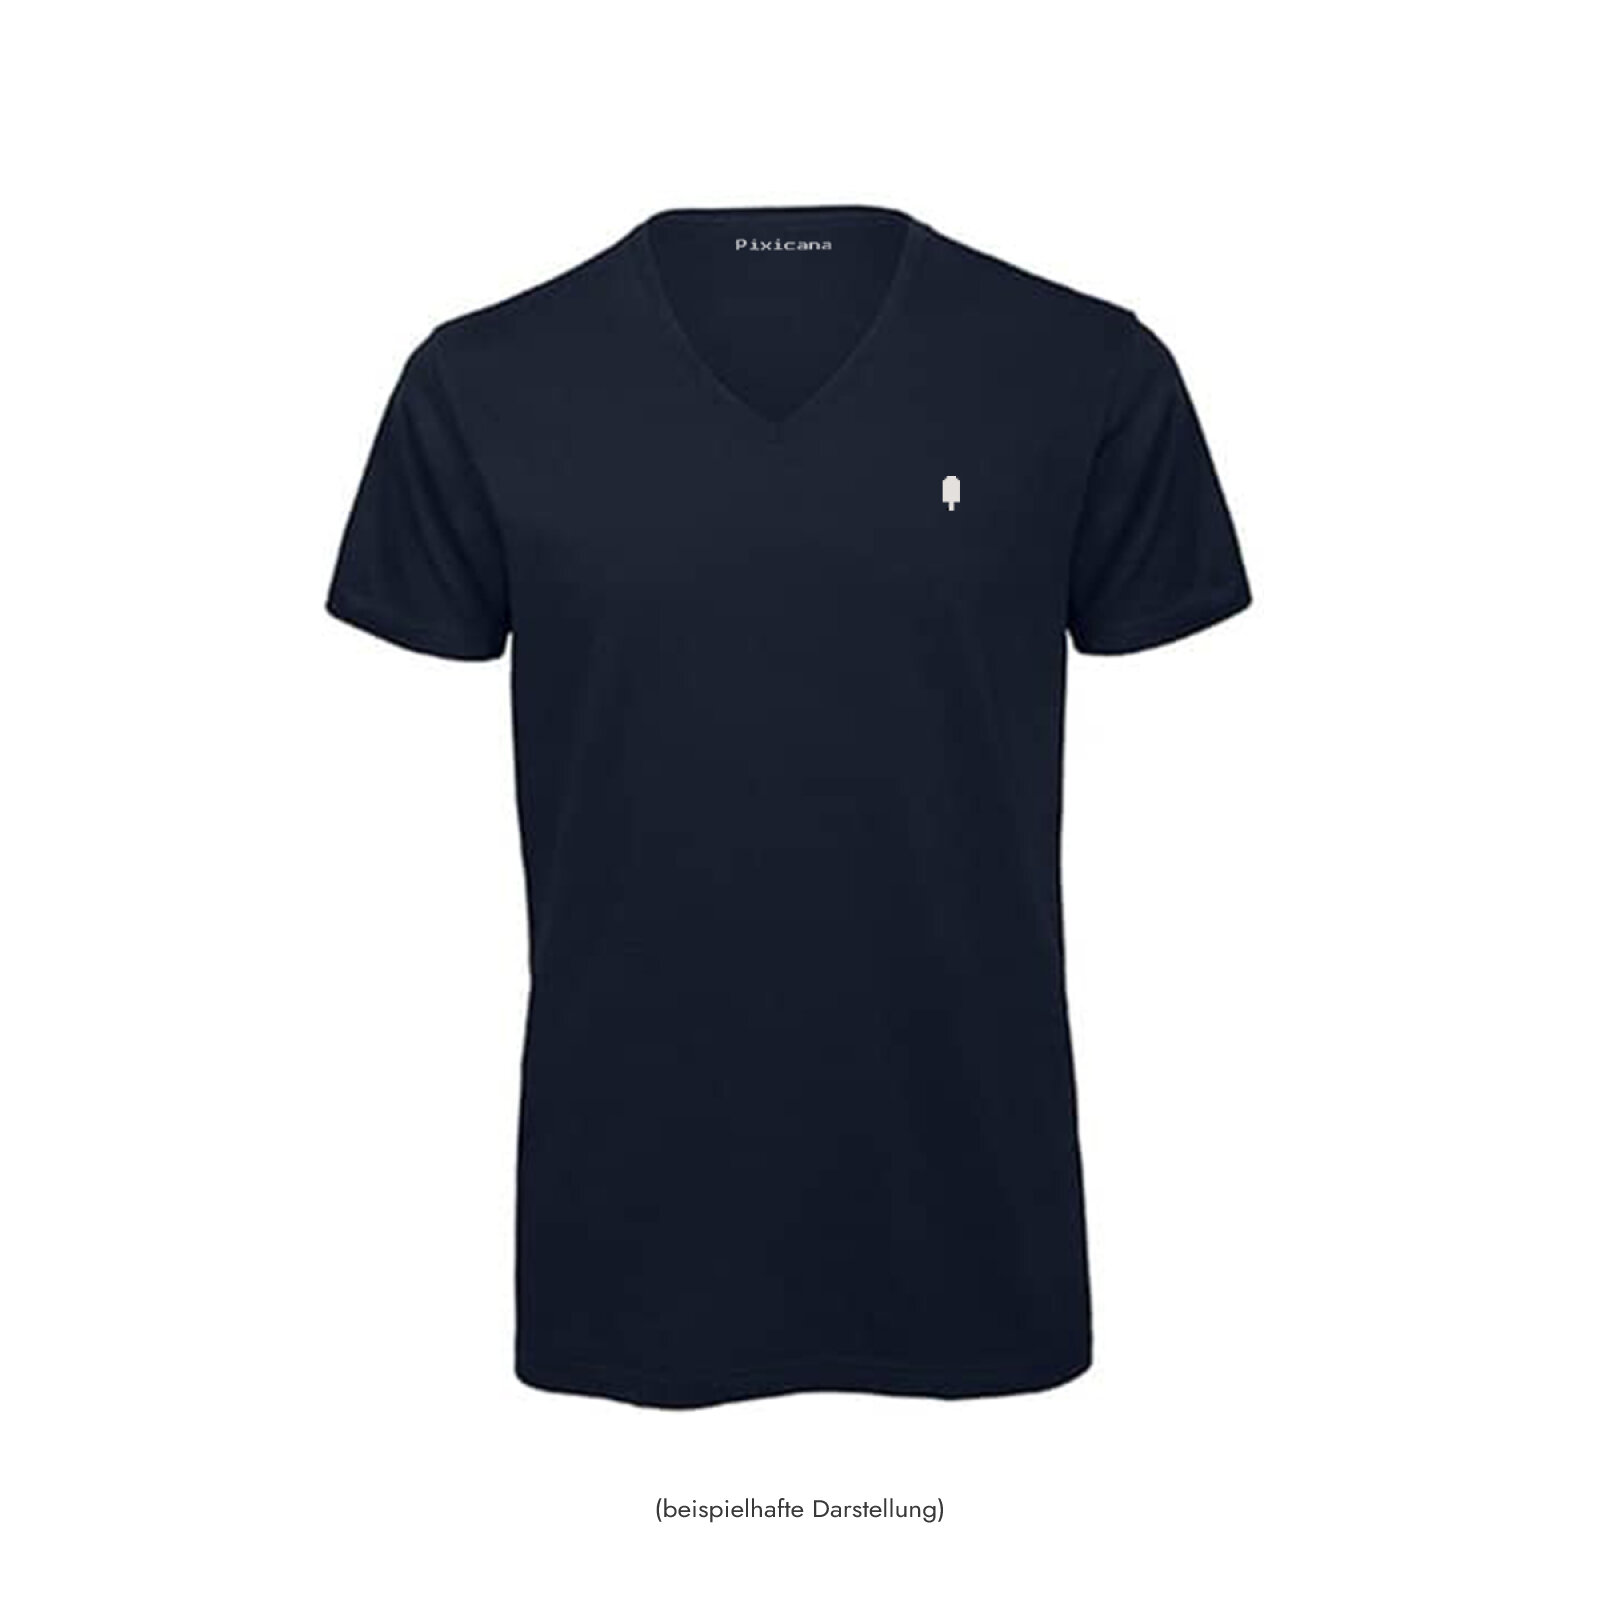 Motive: [Motiv: Classic Eis] Männer | T-Shirt, V-Ausschnitt, dunkelblau / navy, M